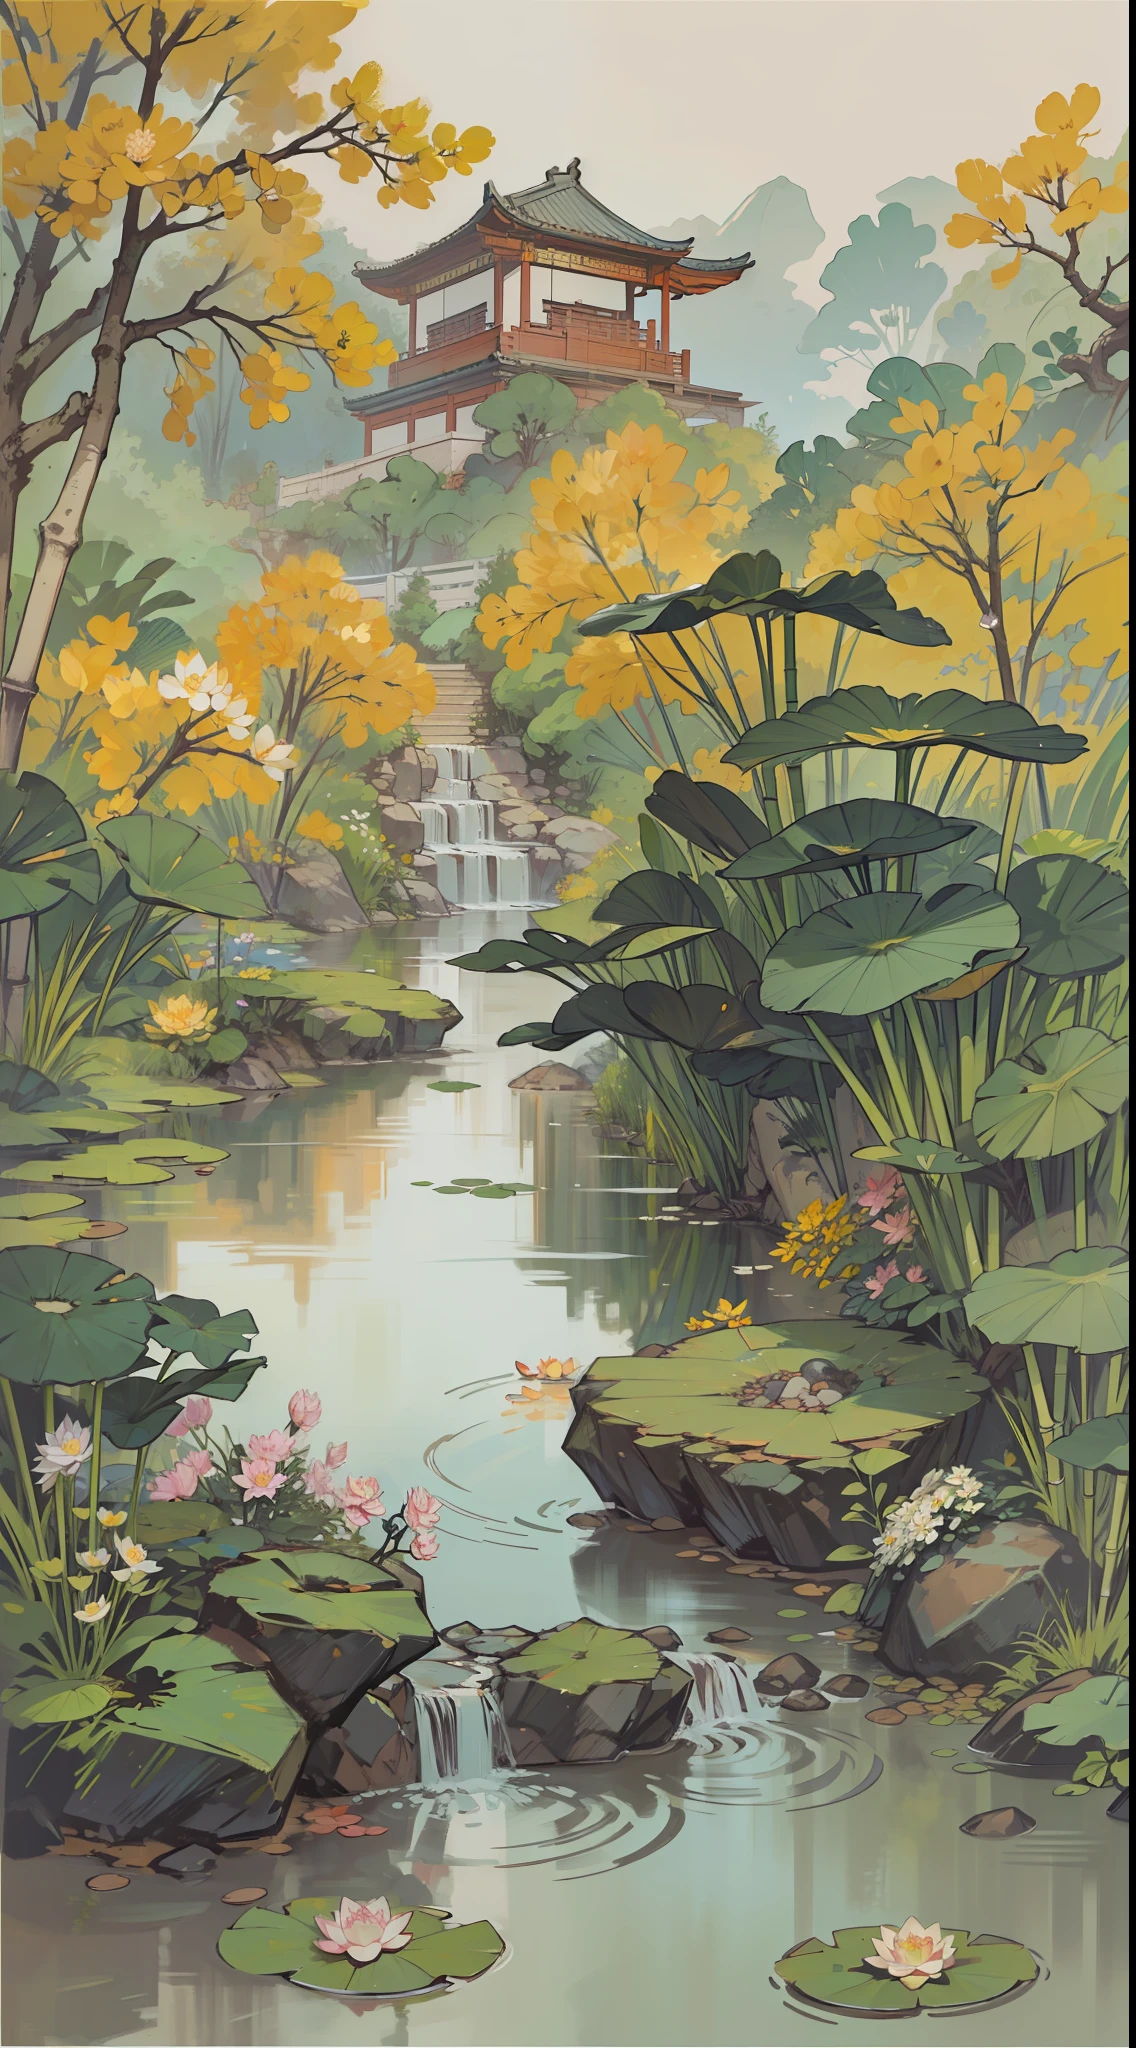 ((最好的品質, 傑作: 1.2)), CG, 8K, 複雜的細節, 電影視角, (周圍沒有人), (中國古代園林), pond filled with lotus 花朵, 岩石, 花朵, 竹林, 瀑布, 樹木繁茂的地區, 小橋橫跨潺潺溪流, detailed foliage and 花朵, (陽光照耀, 波光粼粼的波浪), 和平寧靜的氣氛, ((色彩柔和優雅)), ((精雕細琢的構圖))